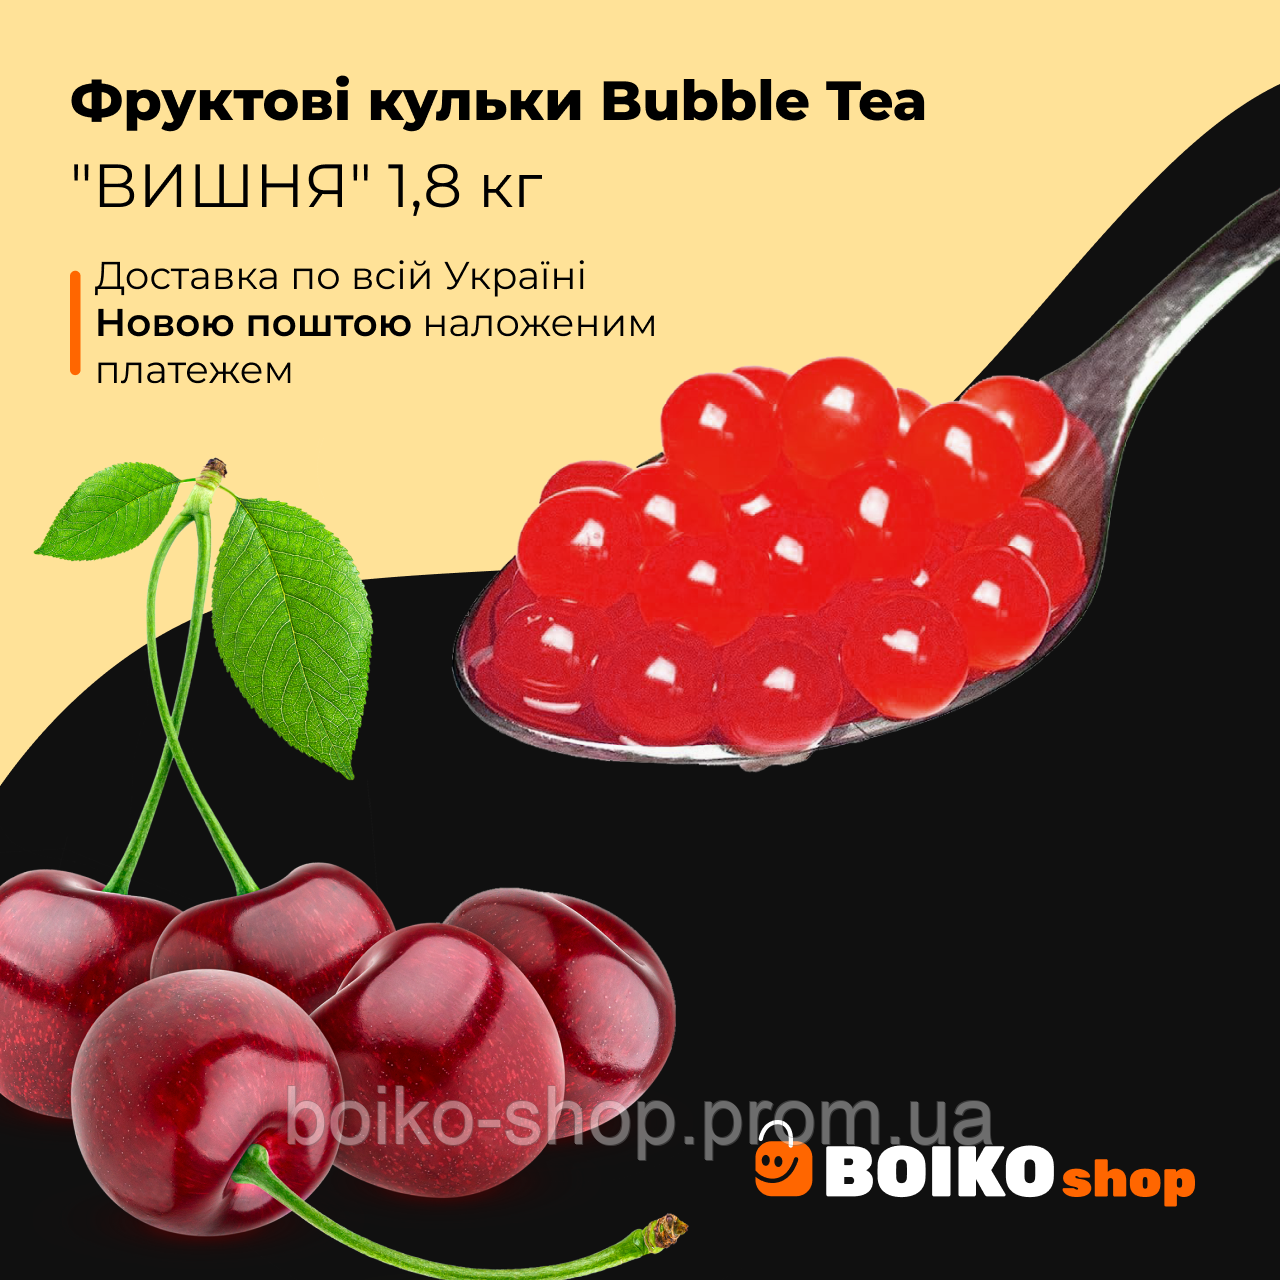 Фруктові кульки Bubble Tea "ВИШНЯ" 1,8 кг